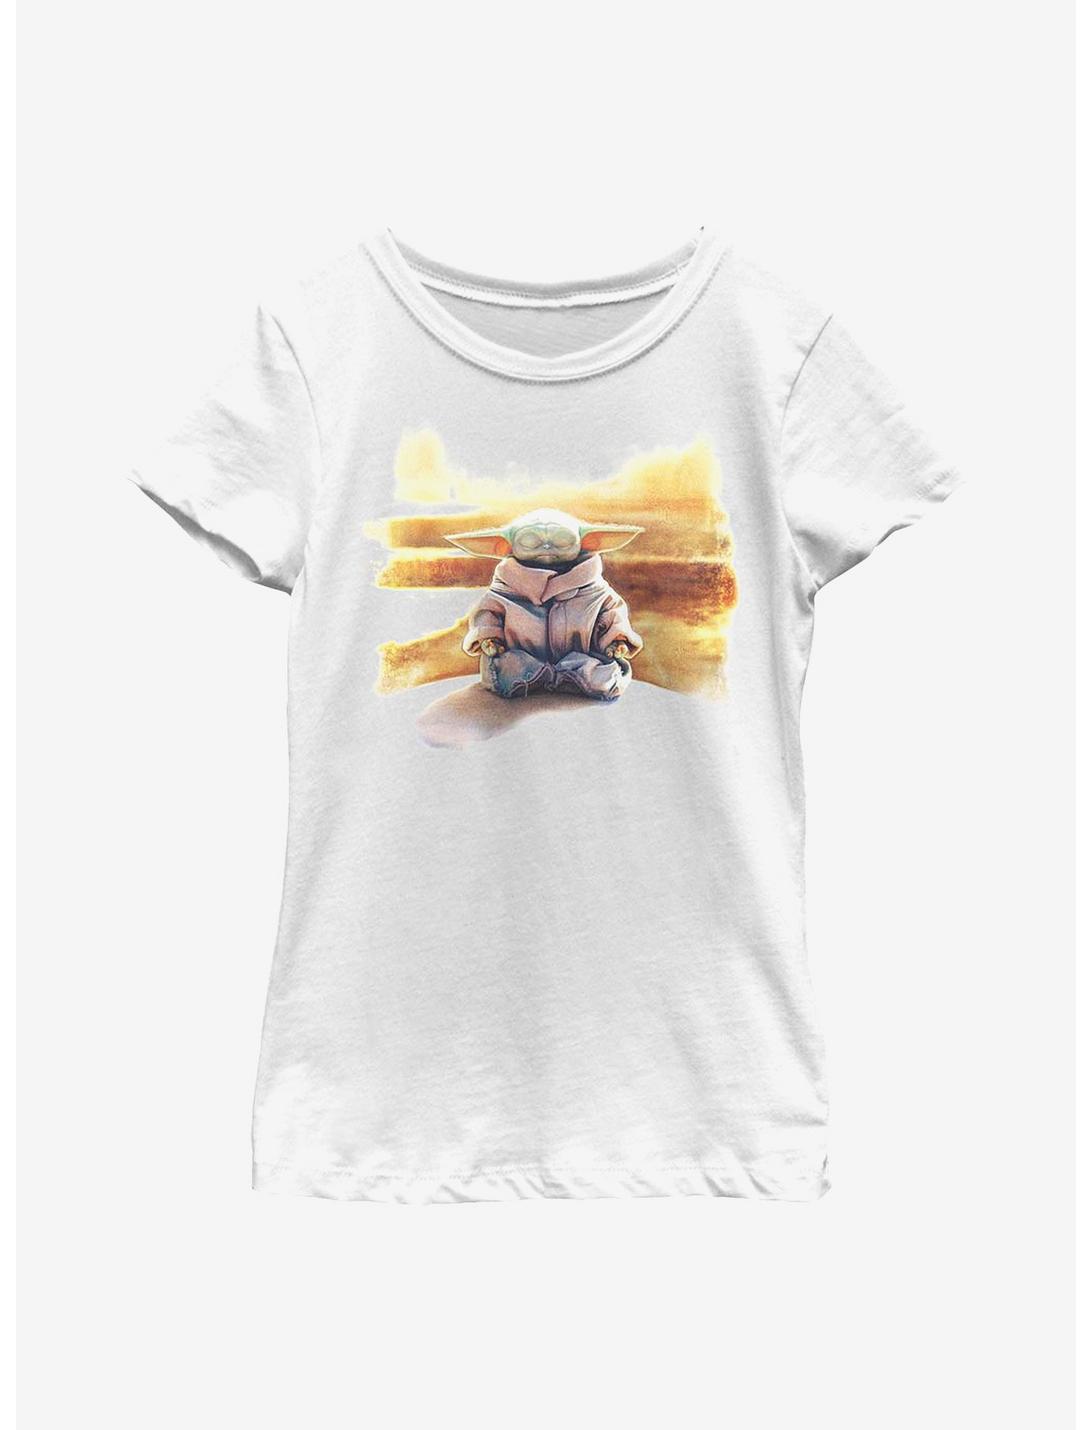 Star Wars The Mandalorian Awakening Youth Girls T-Shirt, WHITE, hi-res